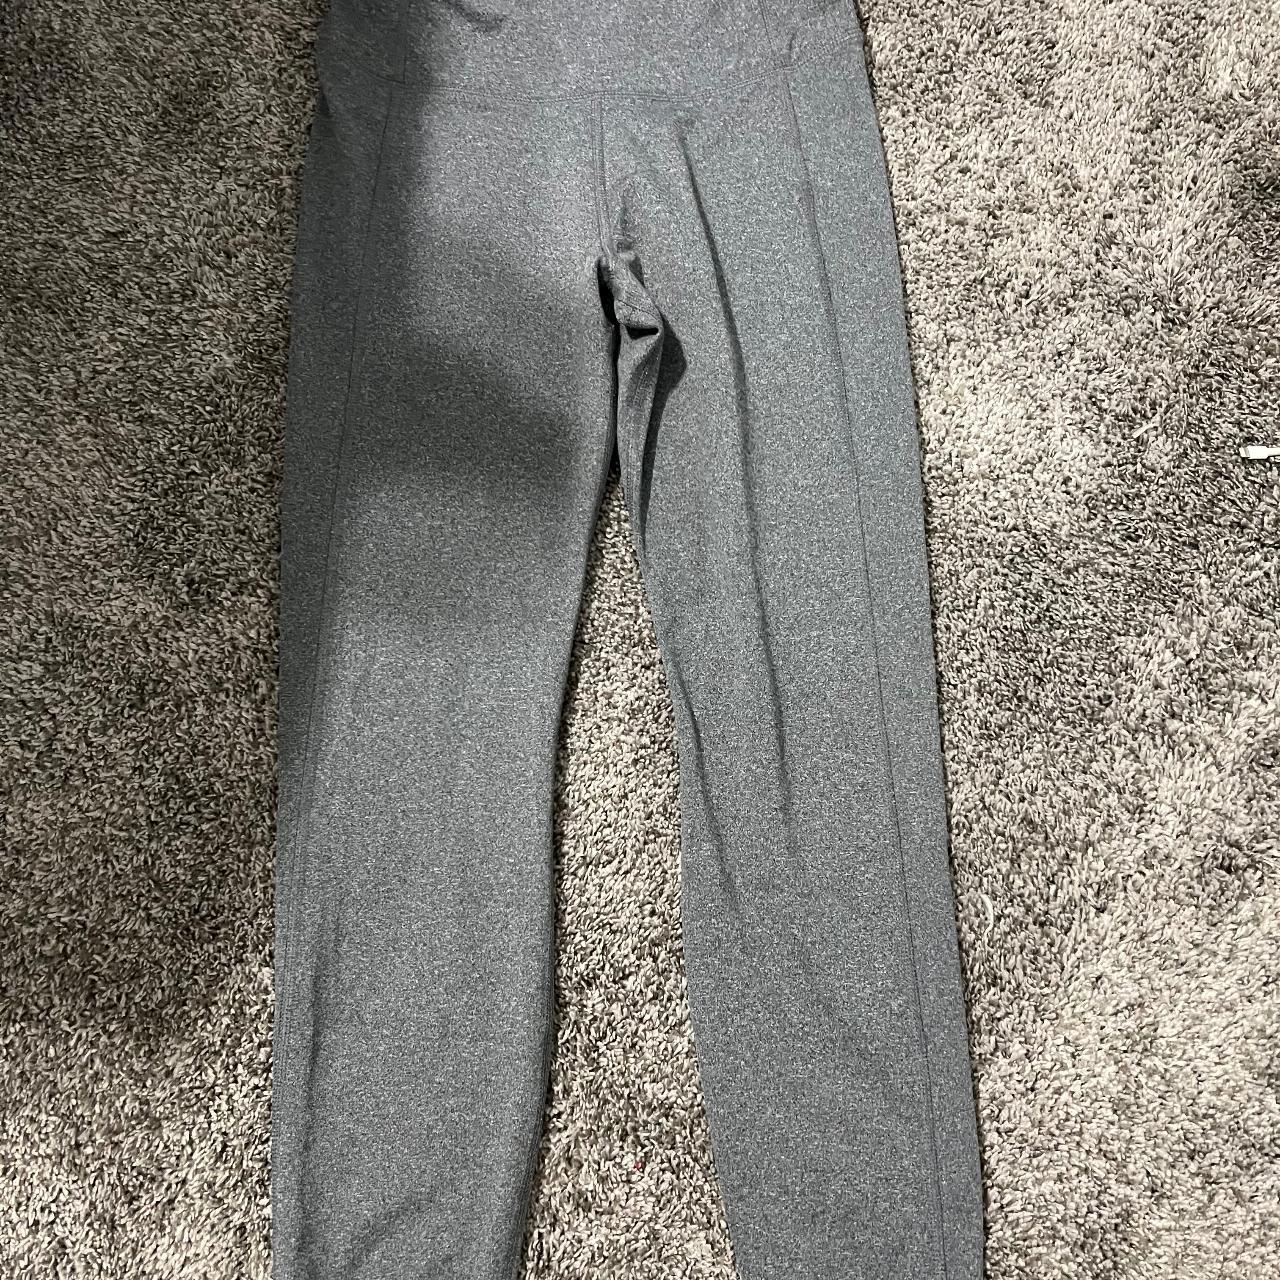 Target grey leggings. worn once. Can fit medium or - Depop